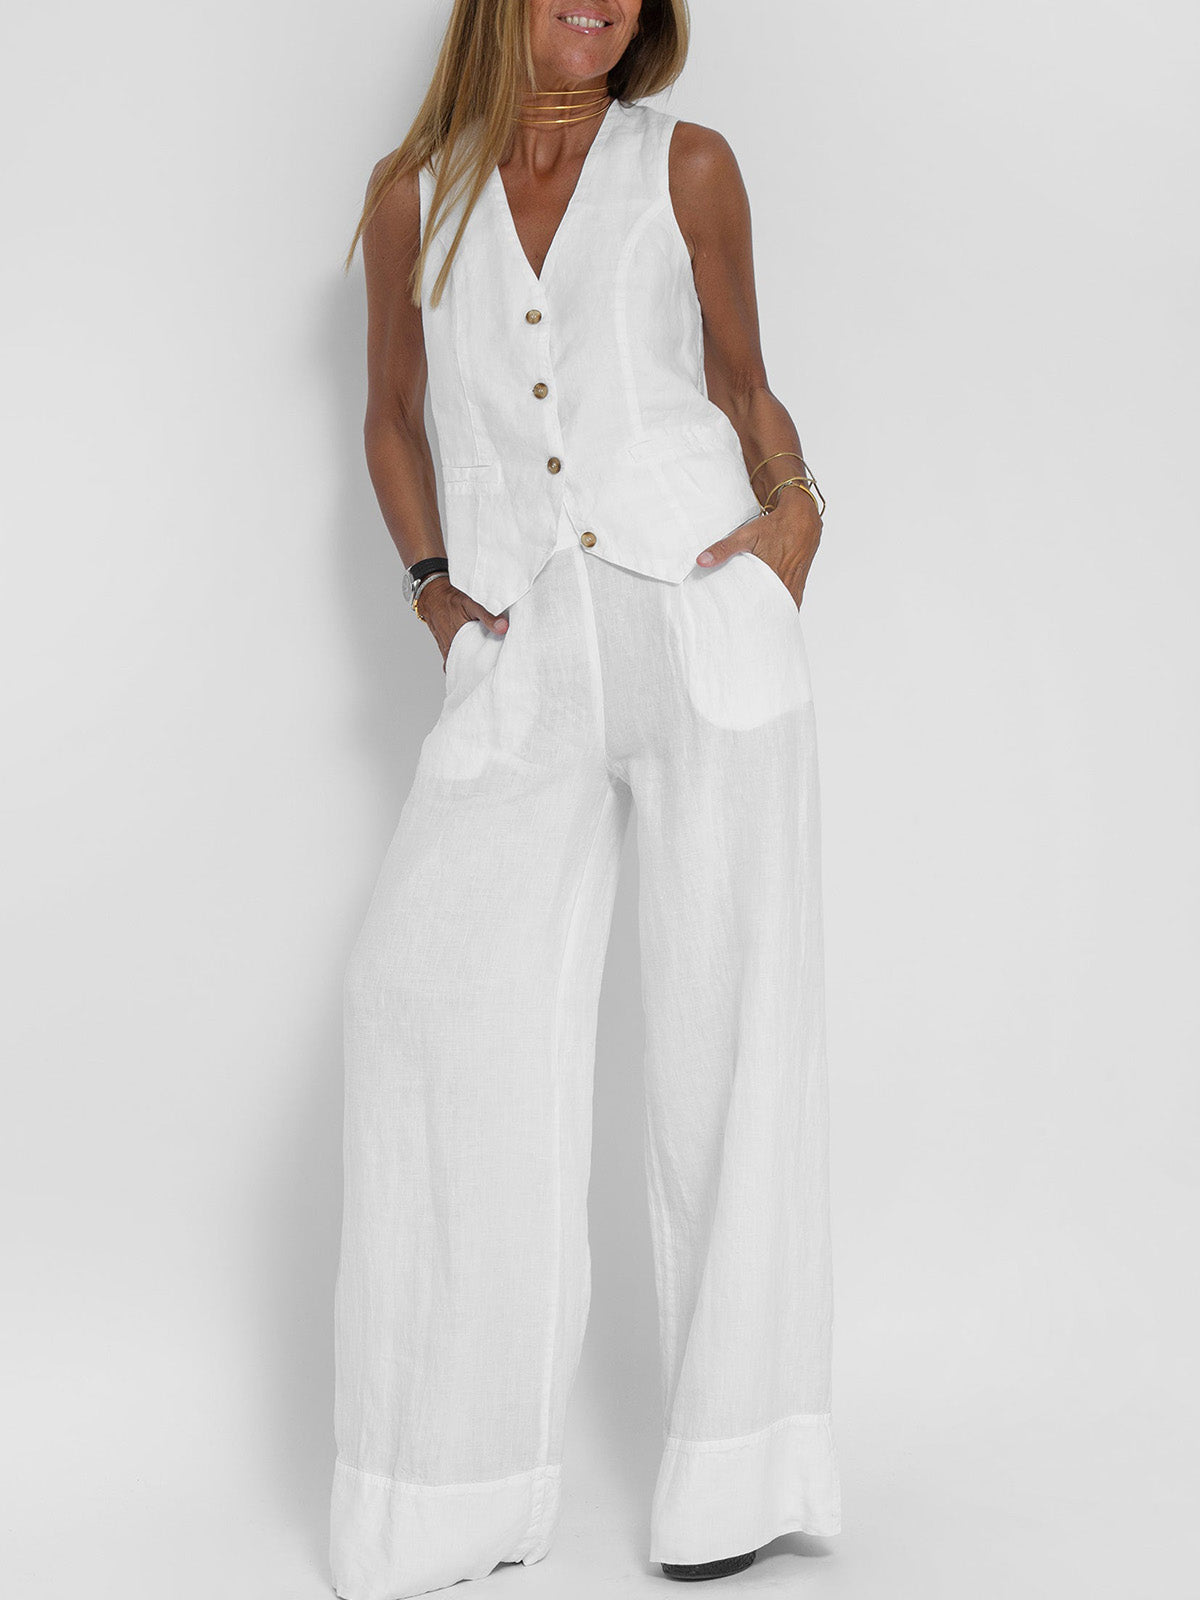 NTG Fad SUIT White / S Splicing vest trousers cotton and linen casual suit